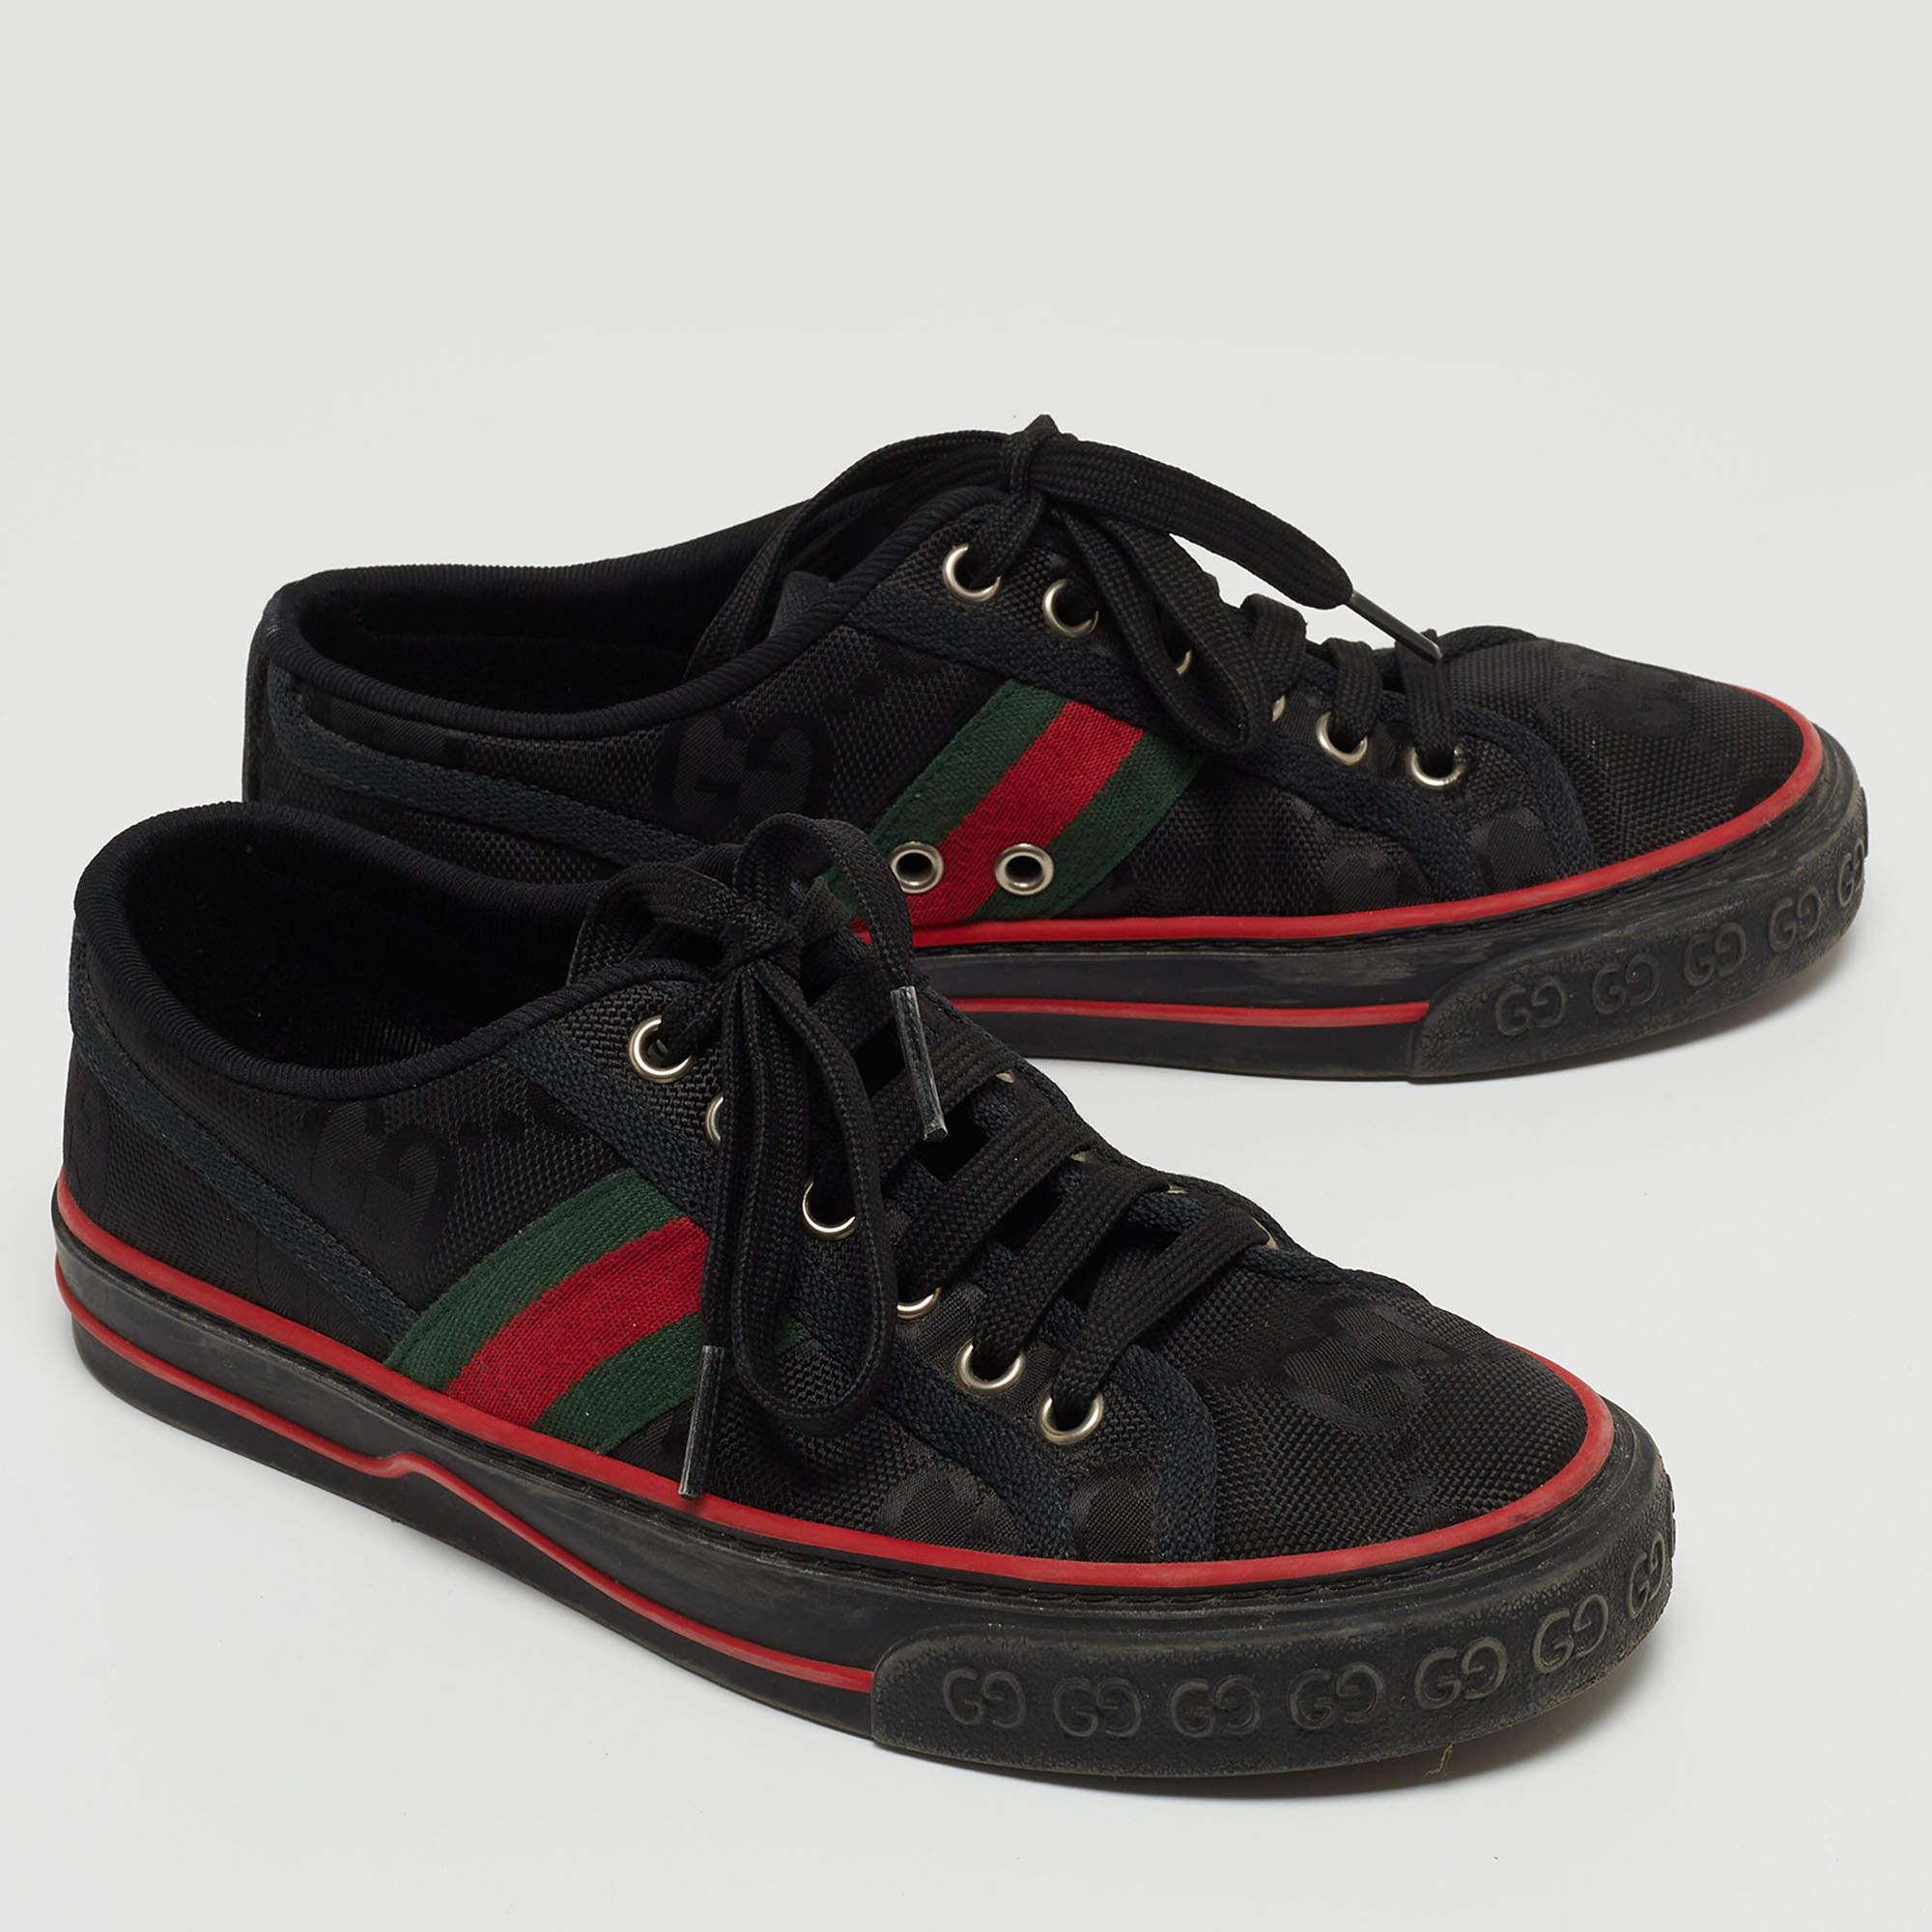 Gucci Black GG Canvas Tennis 1977 Sneakers Size 36 In Good Condition For Sale In Dubai, Al Qouz 2